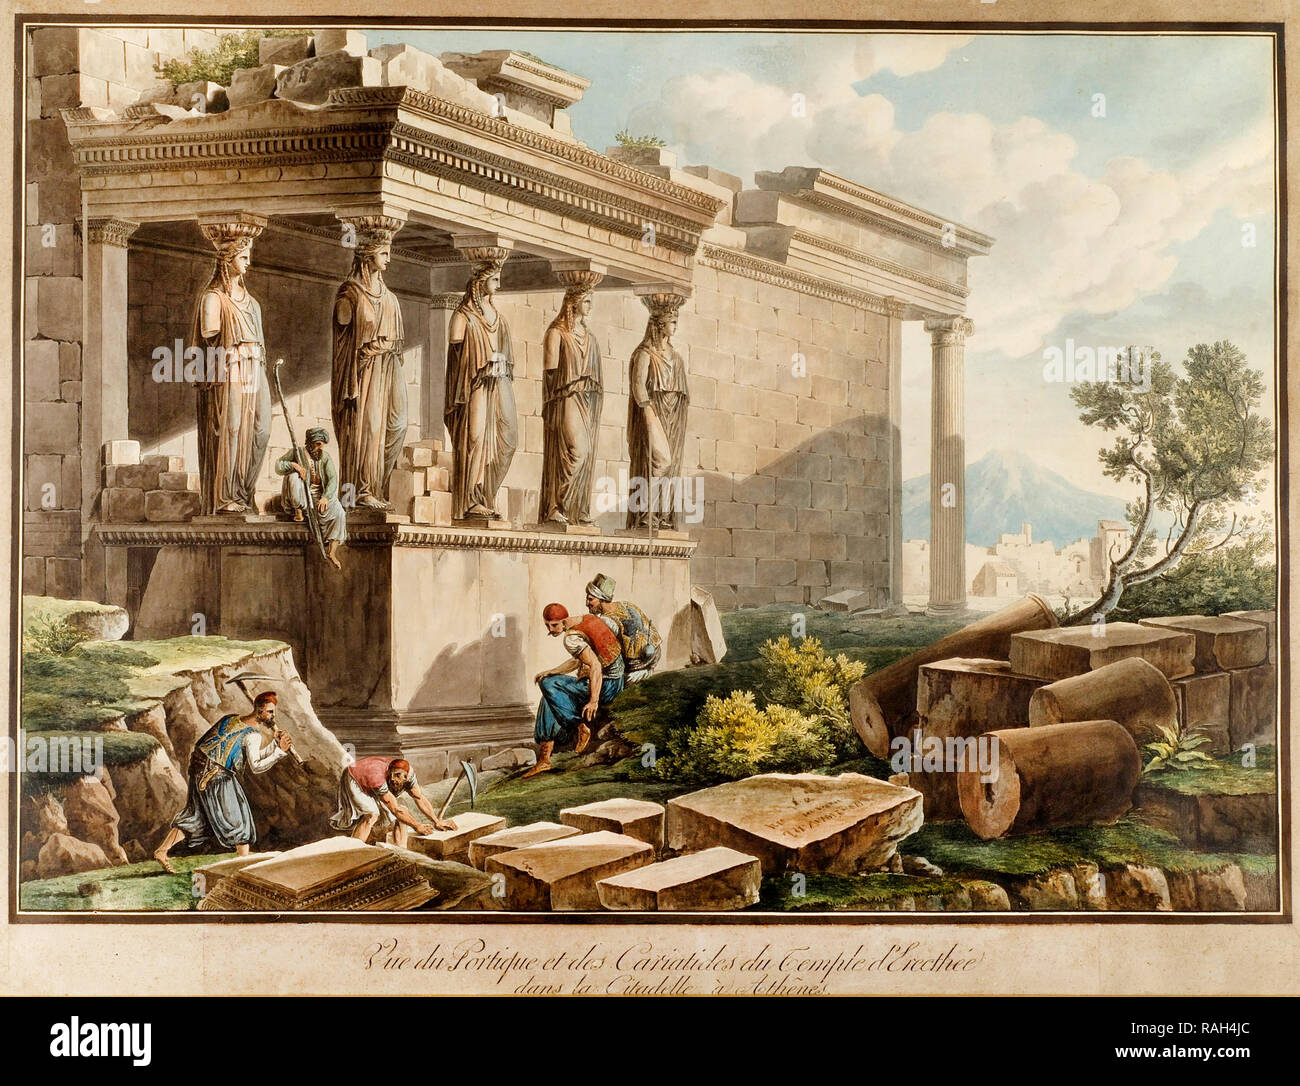 Cassas Louis-Francois, The Porch of the Caryatids on the Erectheion 1813 Print, Benaki Museum, Athens, Greece. Stock Photo